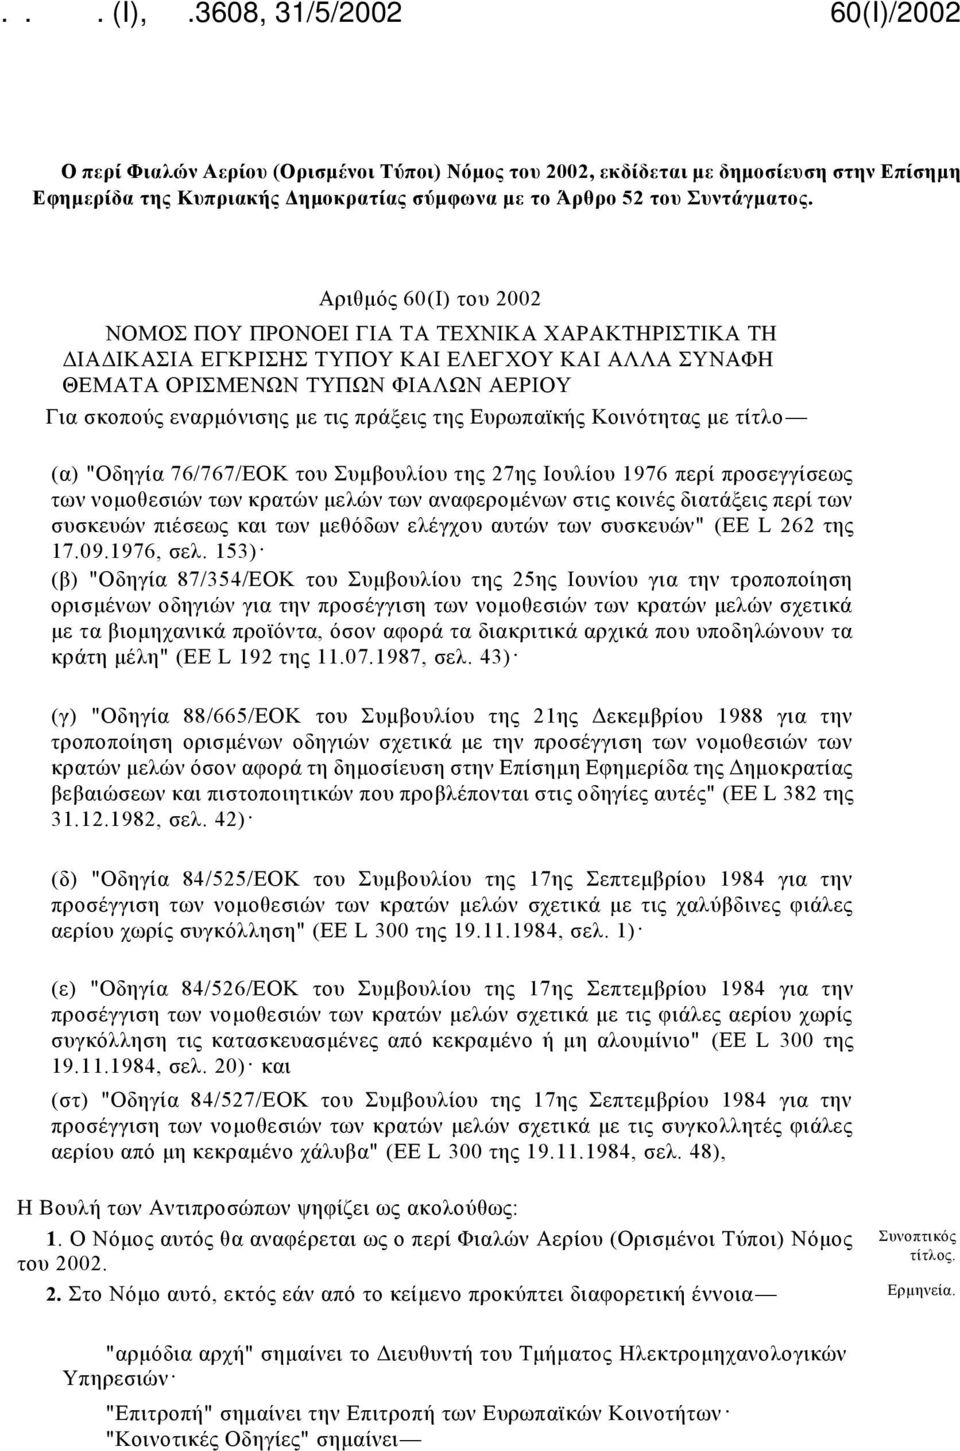 πράξεις της Ευρωπαϊκής Κοινότητας με τίτλο (α) "Οδηγία 76/767/ΕΟΚ του Συμβουλίου της 27ης Ιουλίου 1976 περί προσεγγίσεως των νομοθεσιών των κρατών μελών των αναφερομένων στις κοινές διατάξεις περί